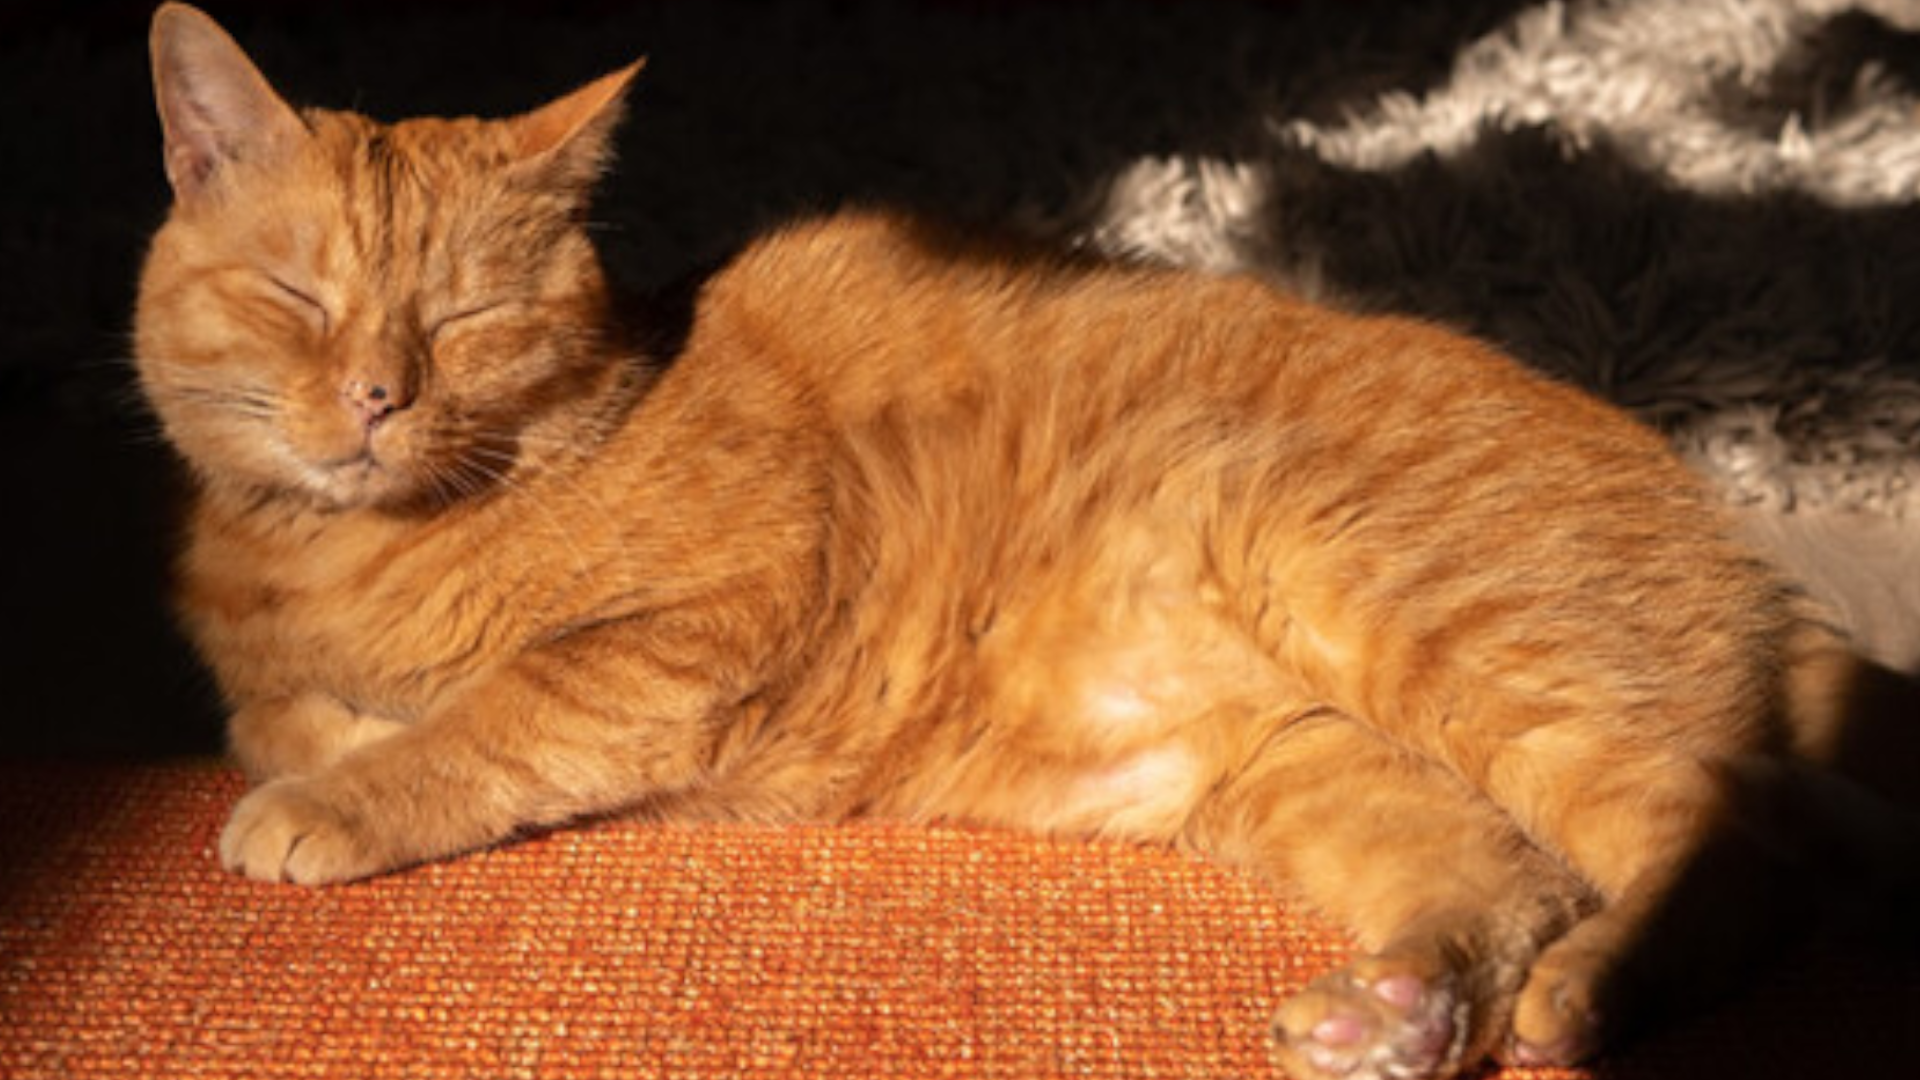 Kucing oranye Murtaugh, yang menjadi basis sebagian kucing dari Stray, tertidur di bawah sinar matahari